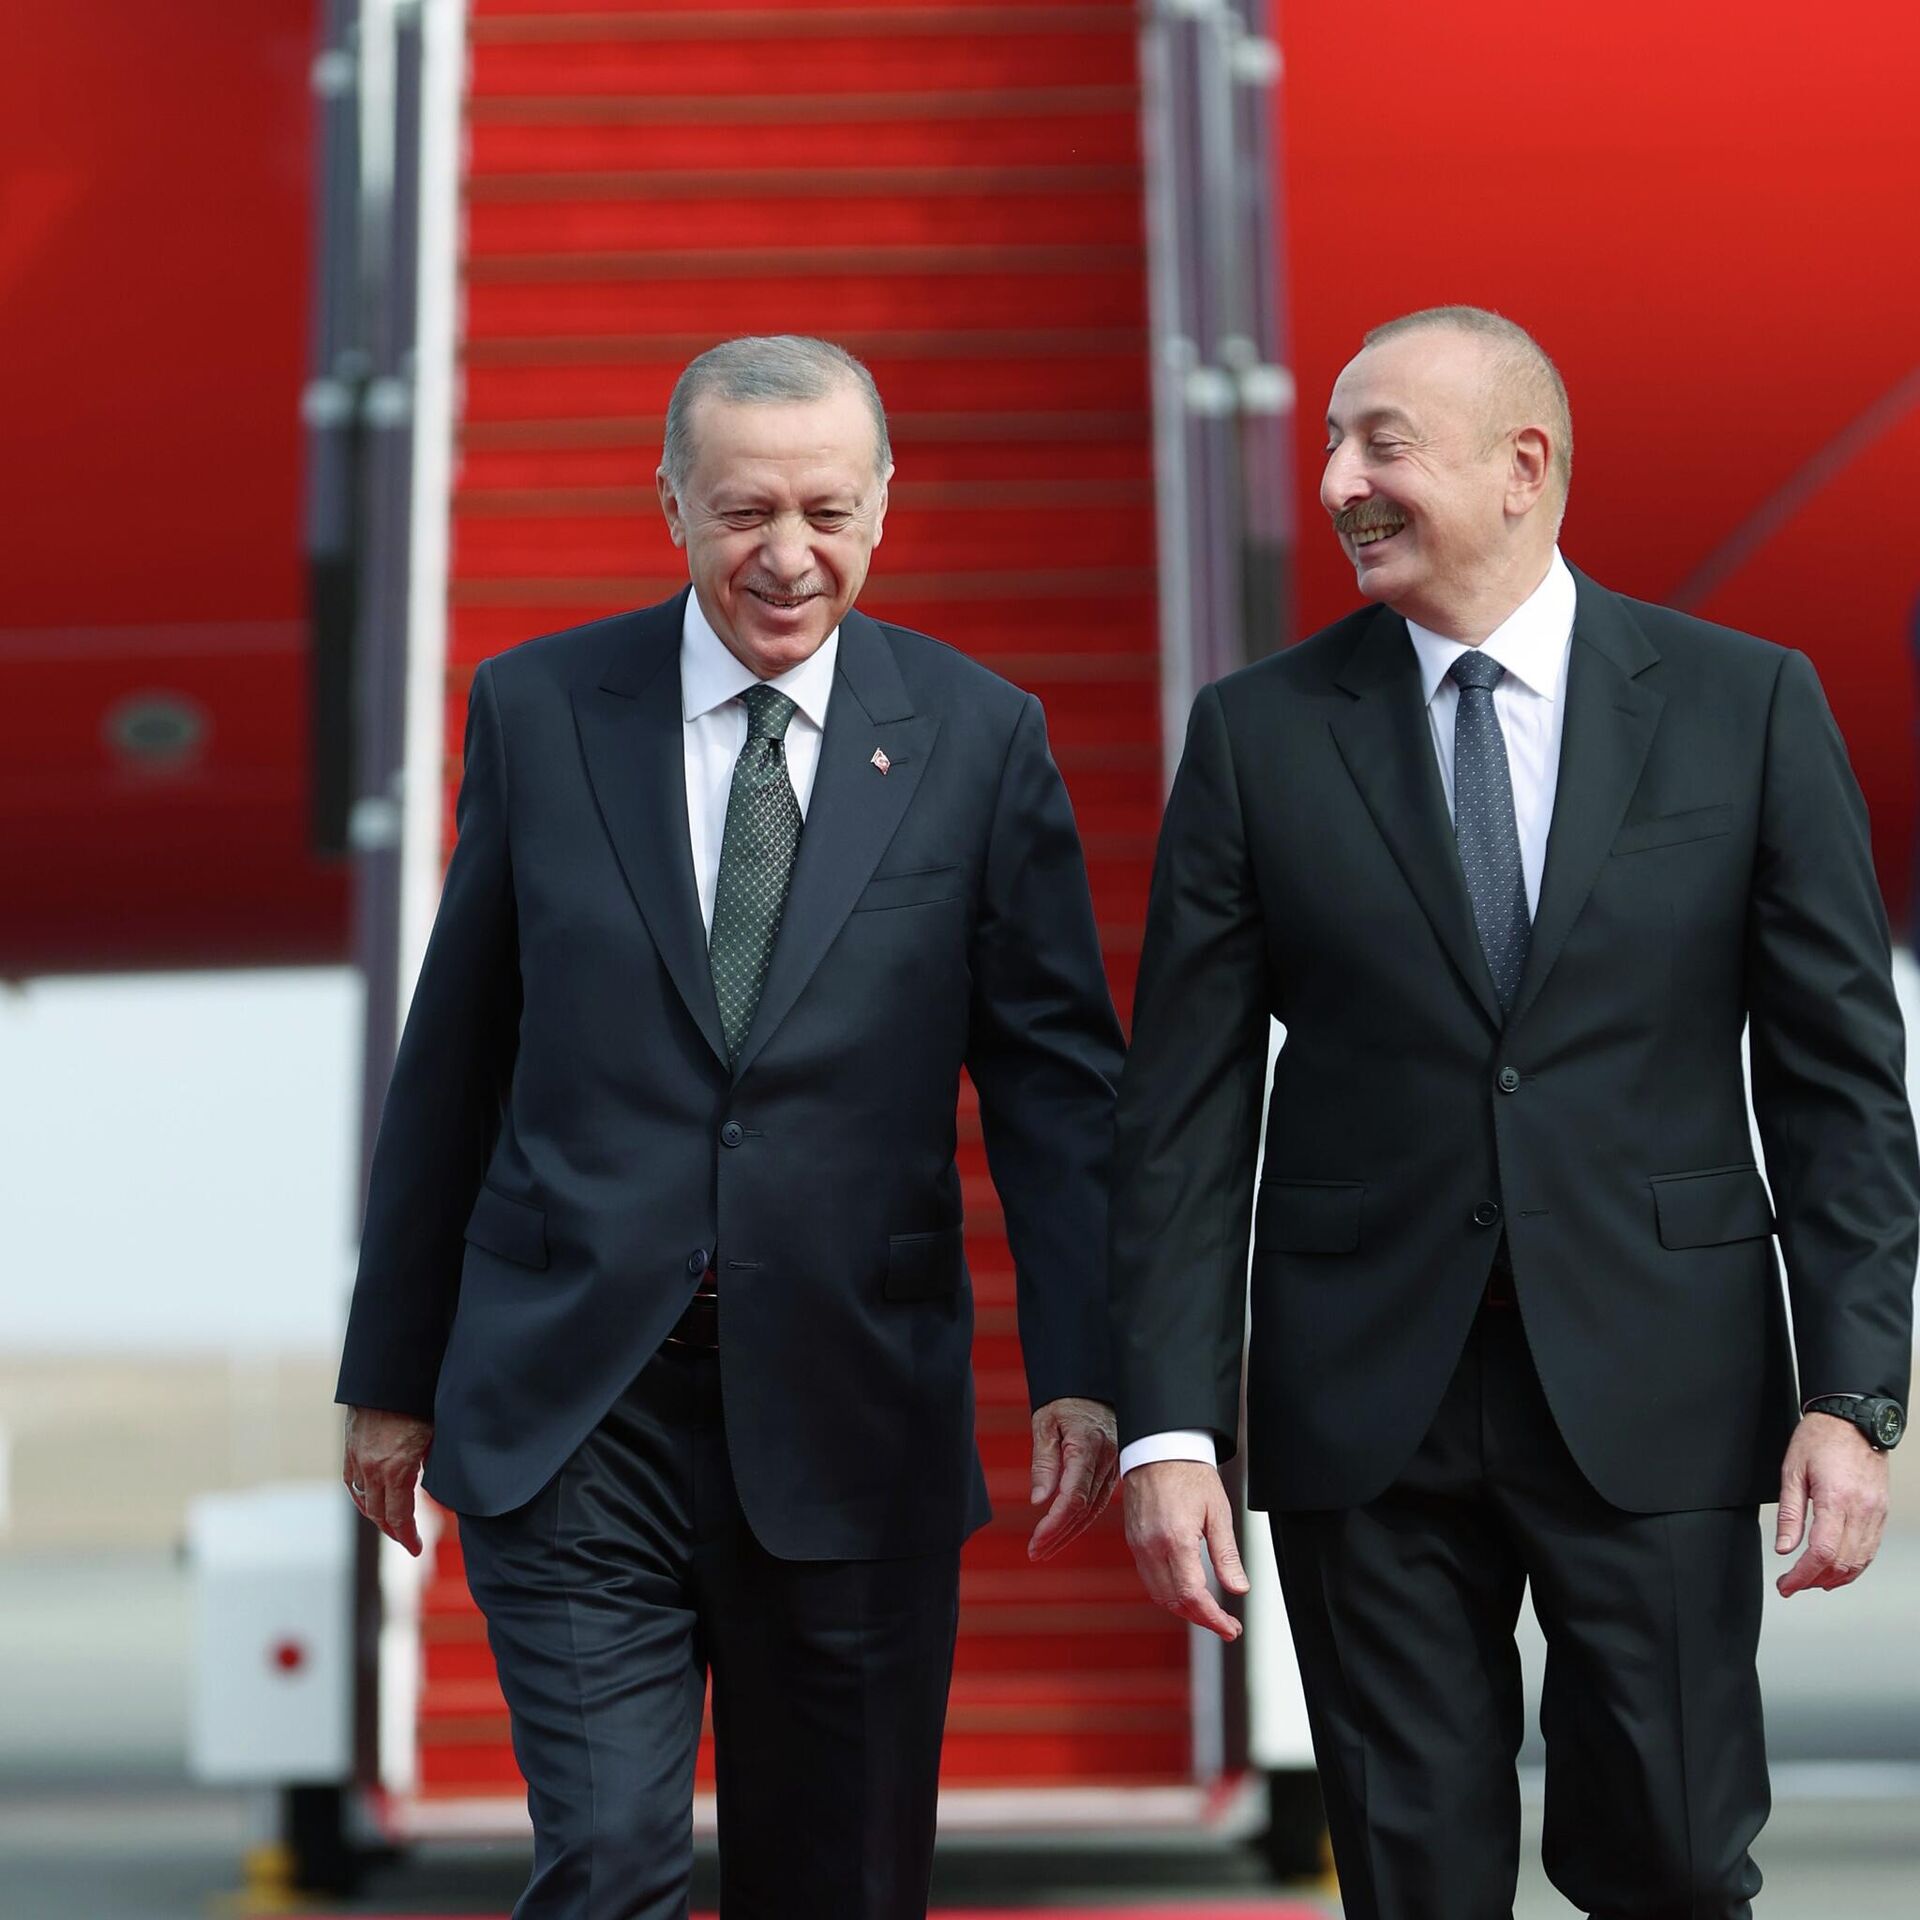 Azerbaycan Cumhurbaşkanı Aliyev ilk resmi ziyaret için Türkiye'ye geldi